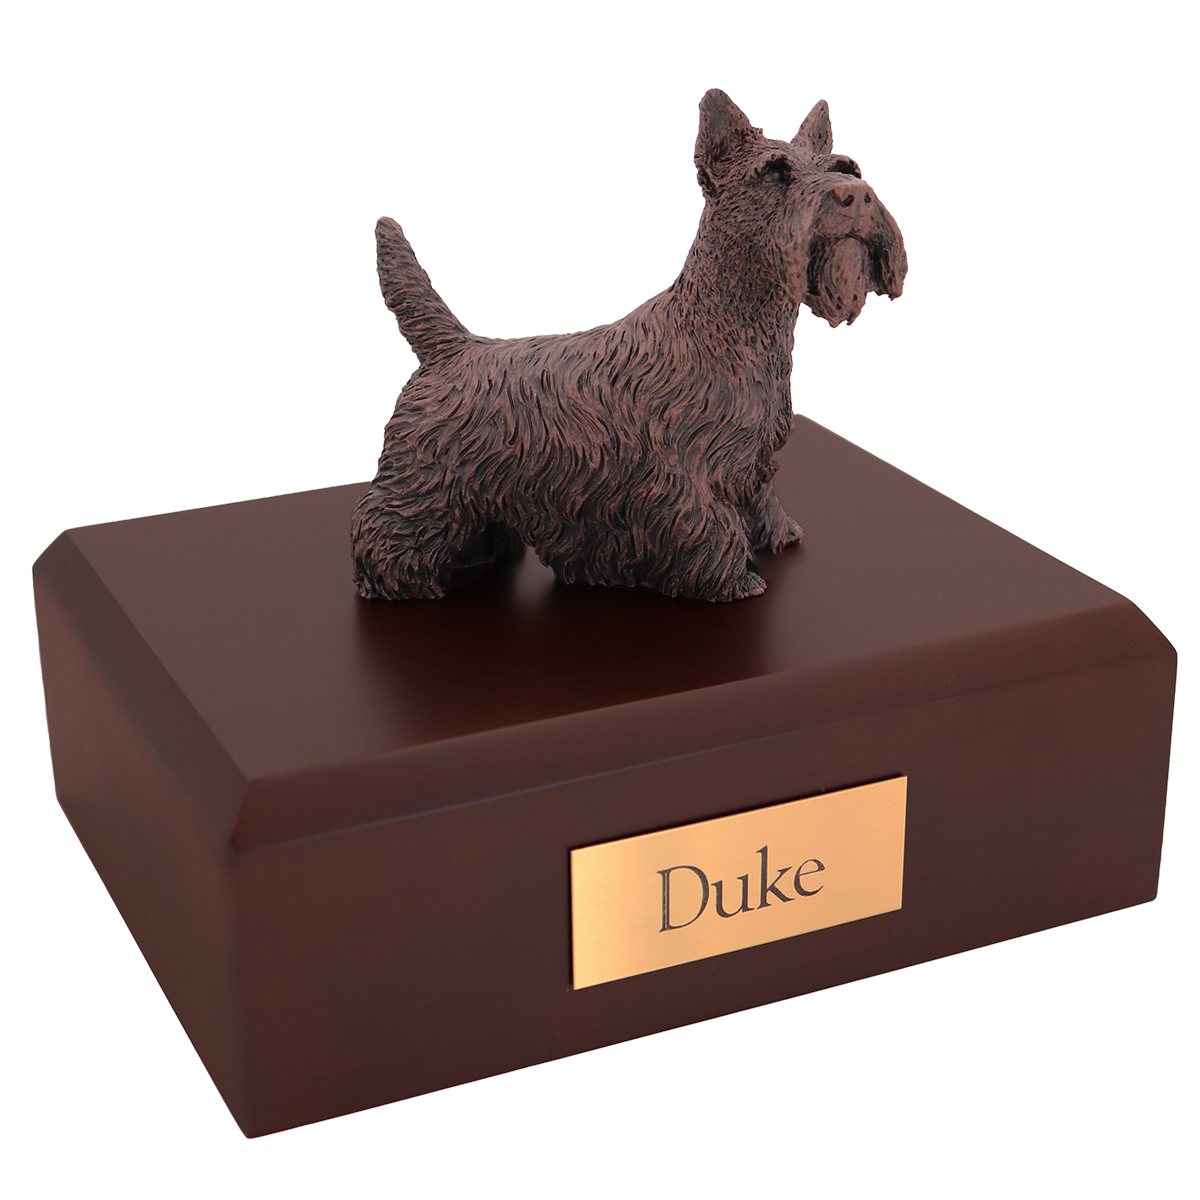 Dog, Scottish Terrier, Bronze - Figurine Urn